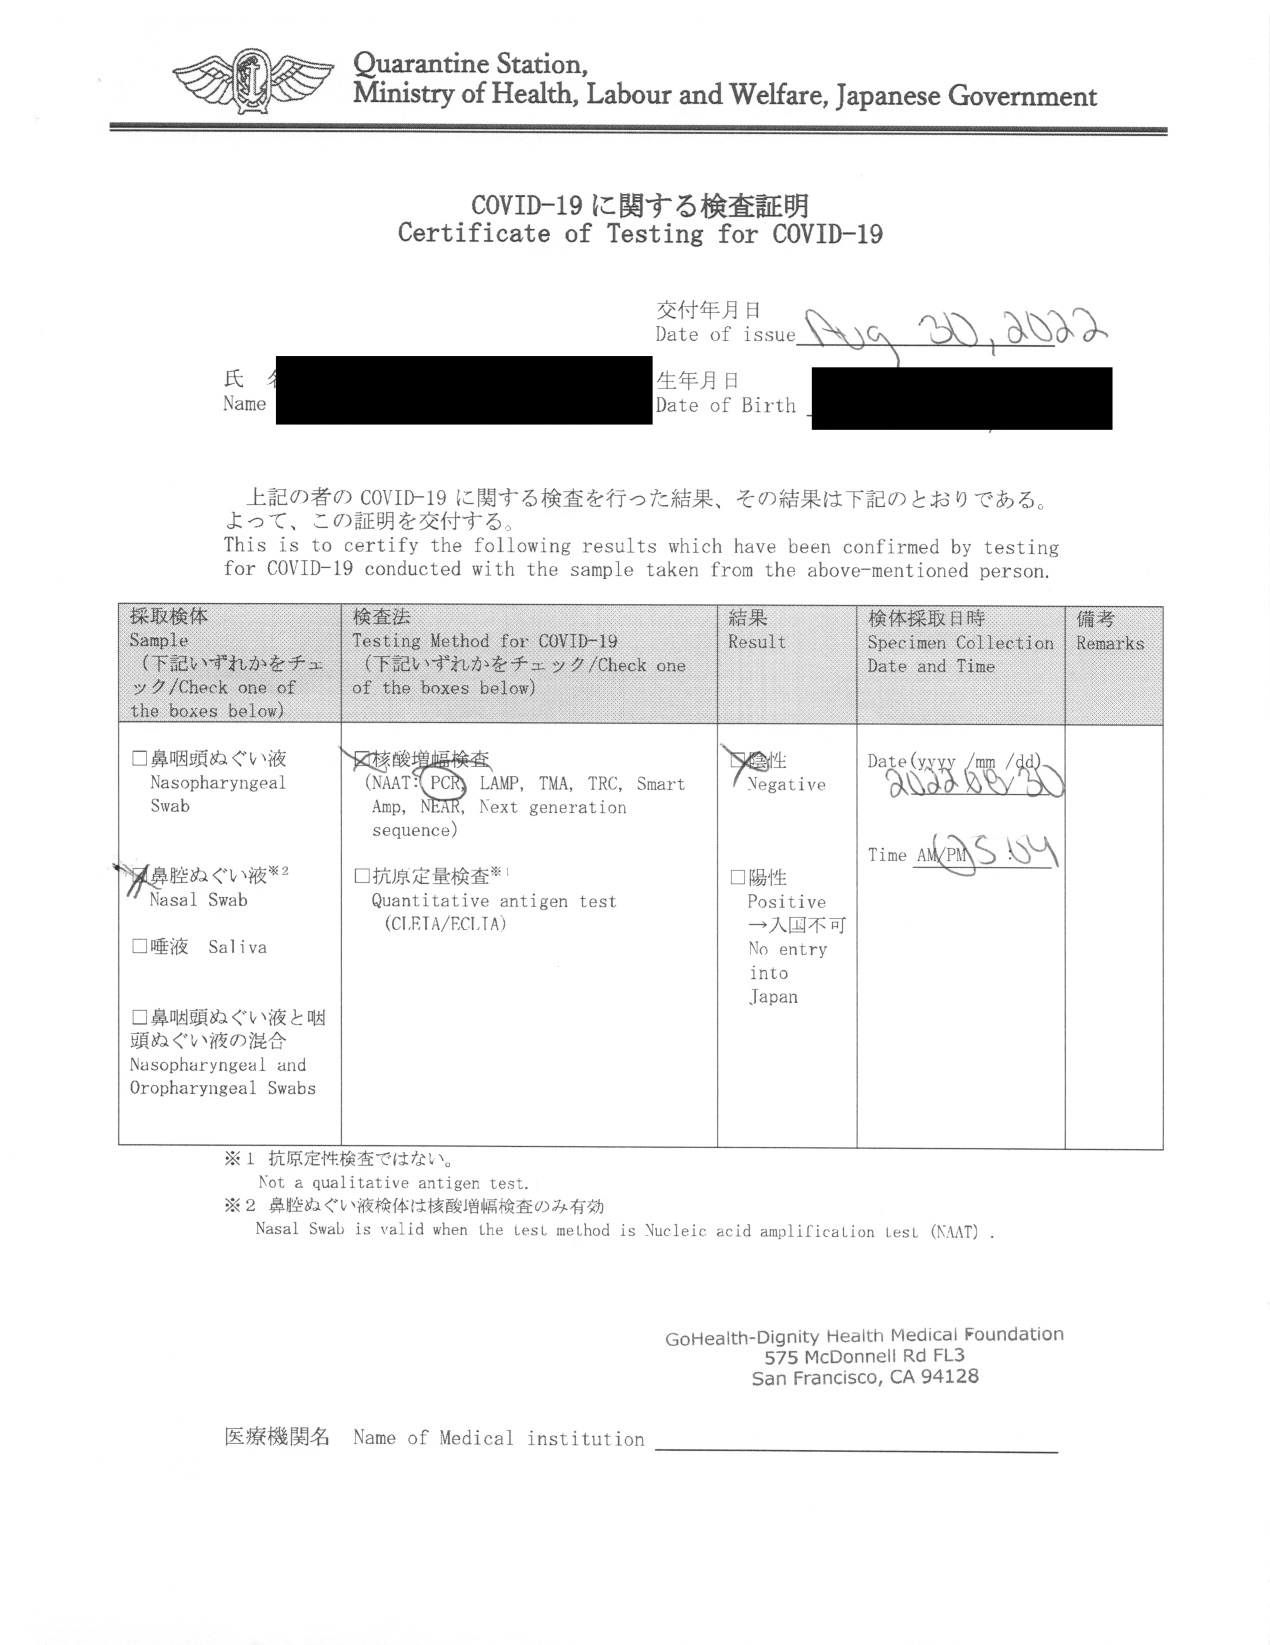 日本政府指定のフォーマットでの陰性検査証明書 (一部修整)